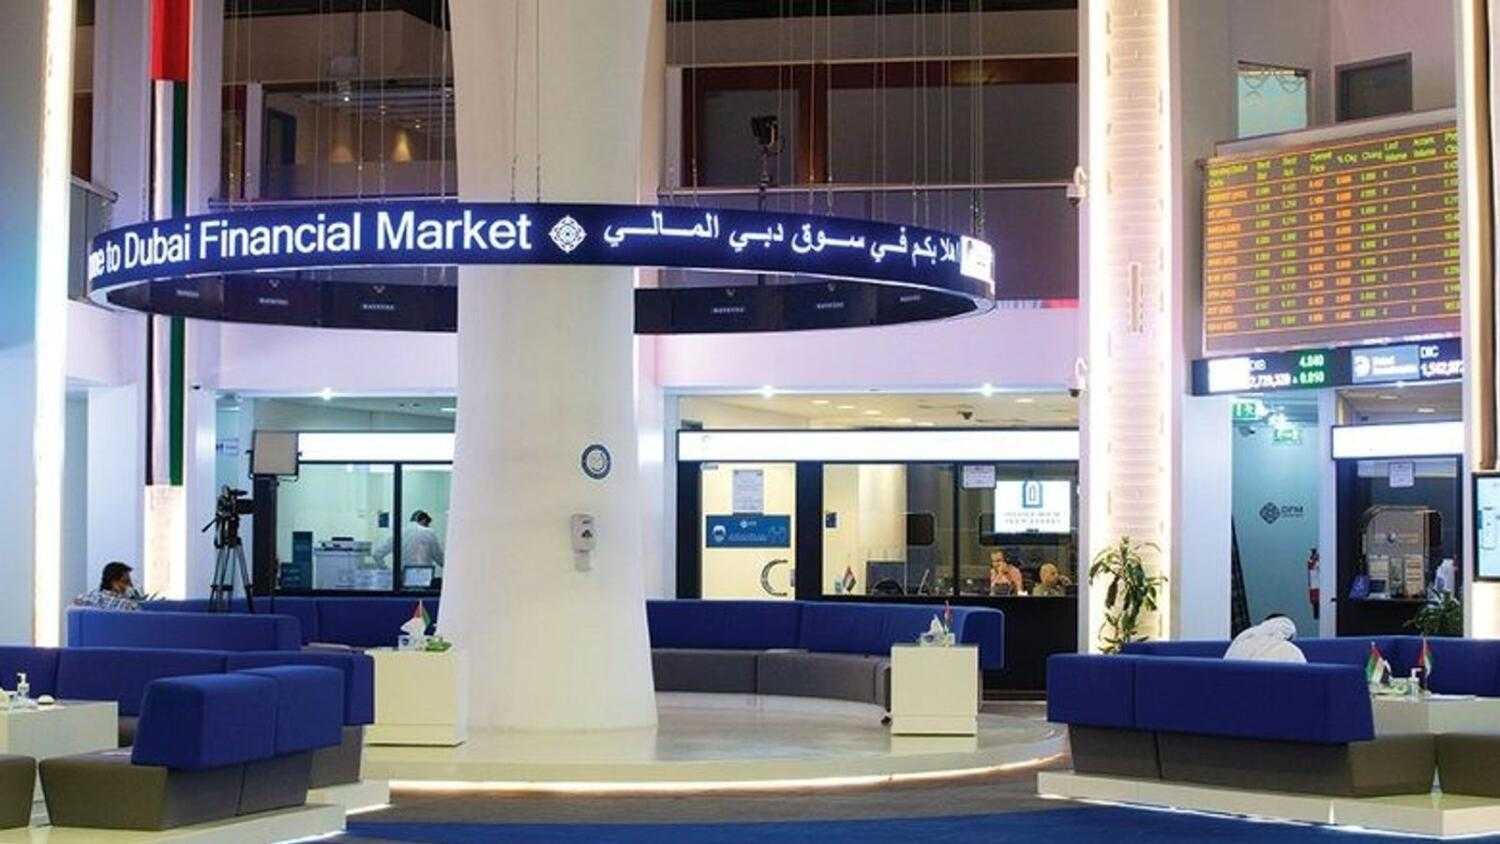 سوقا أبوظبي ودبي يستحوذان على 20% من سيولة البورصات العربية الأسبوع الماضي